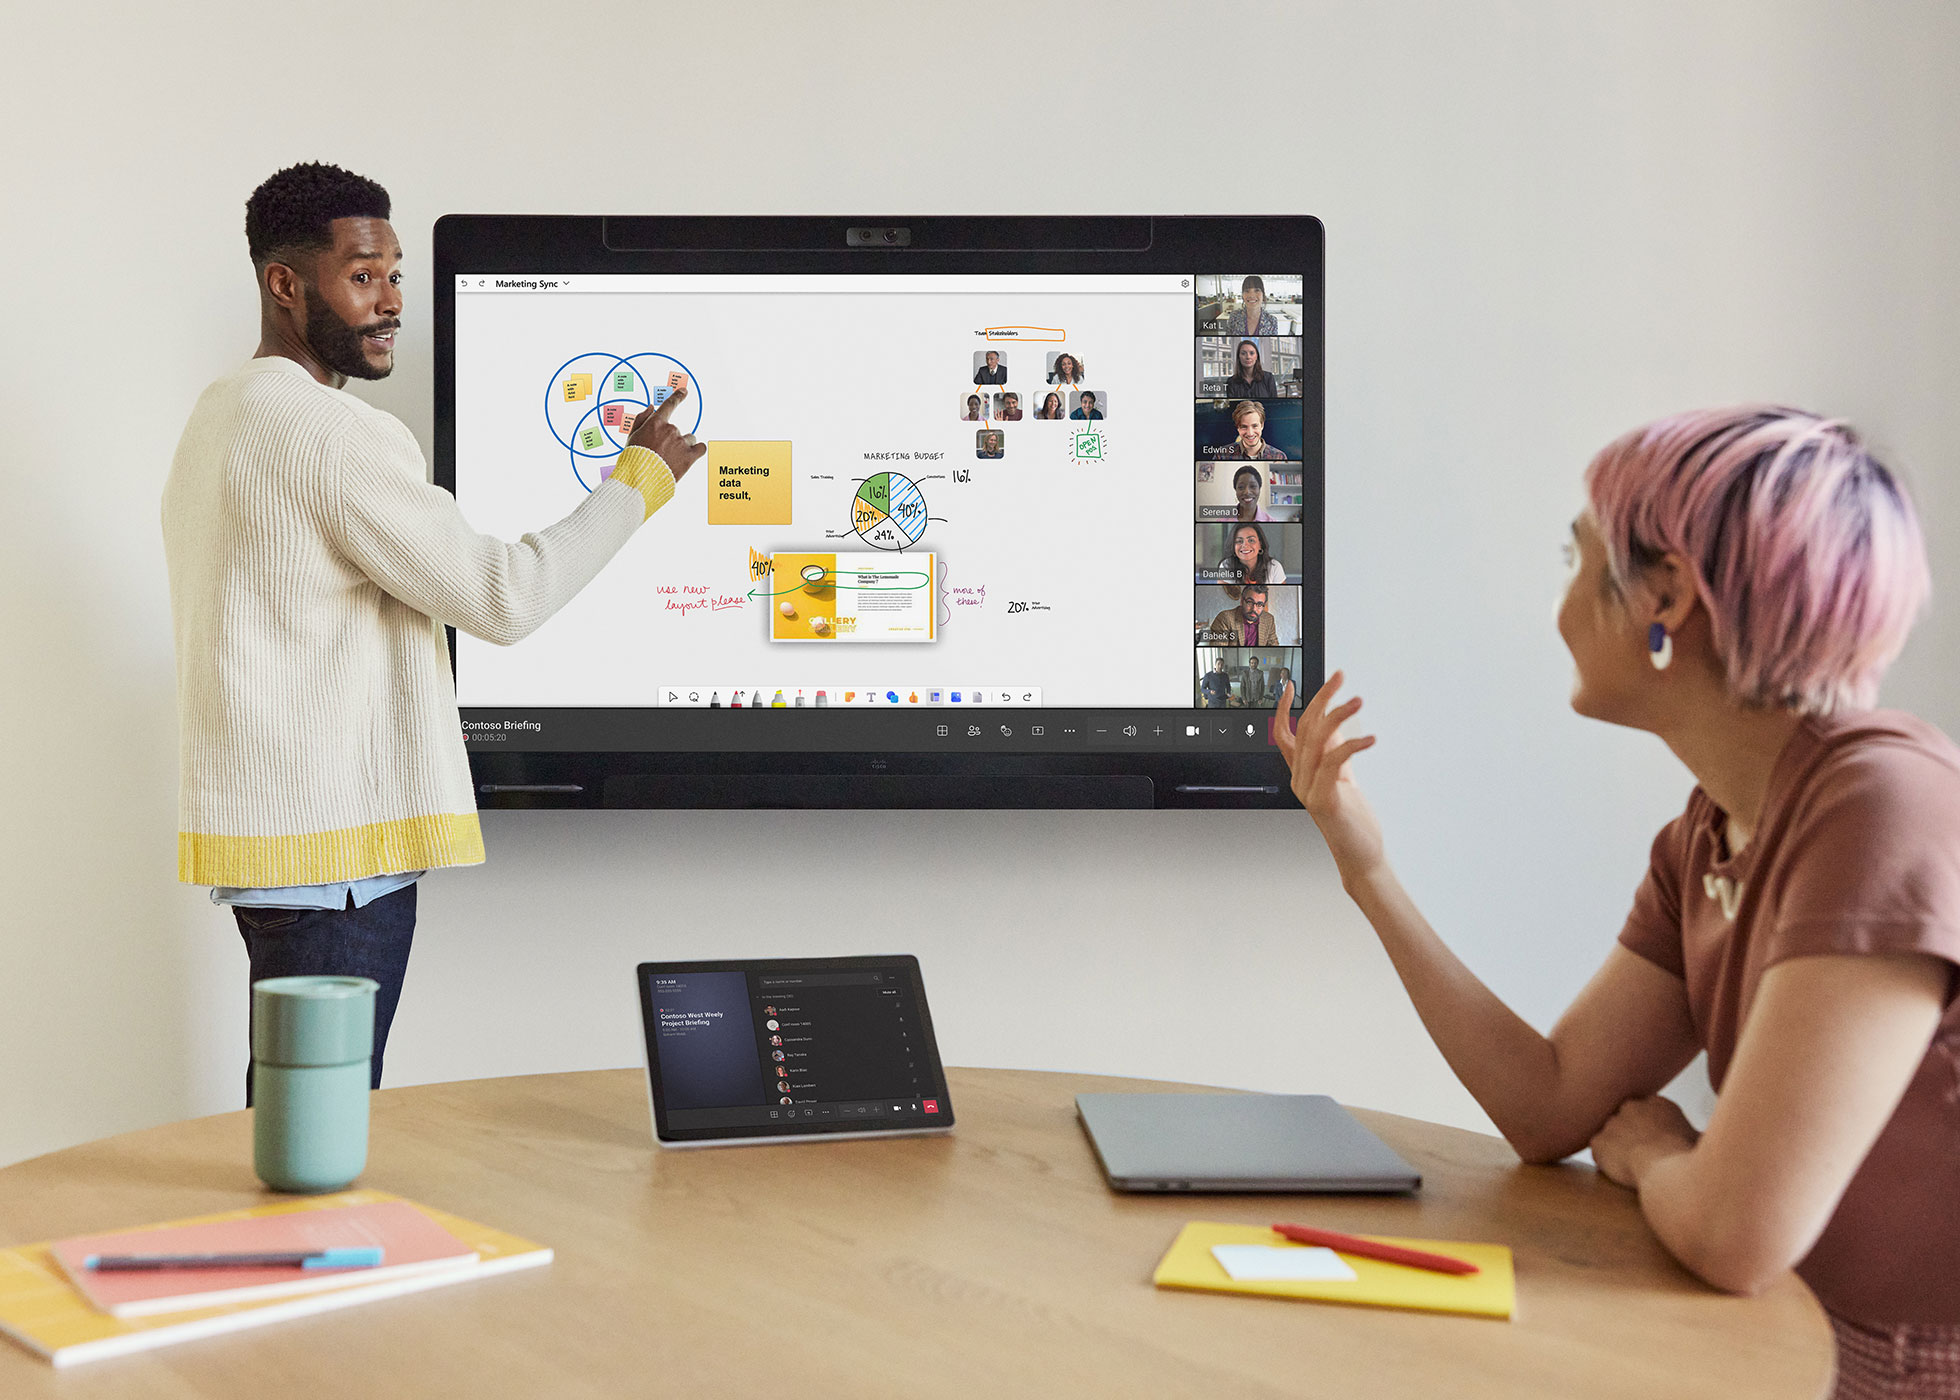 オフィスで Cisco Board Pro を使って Microsoft Teams のリモート参加者とコラボレーションしている同僚 2 人。